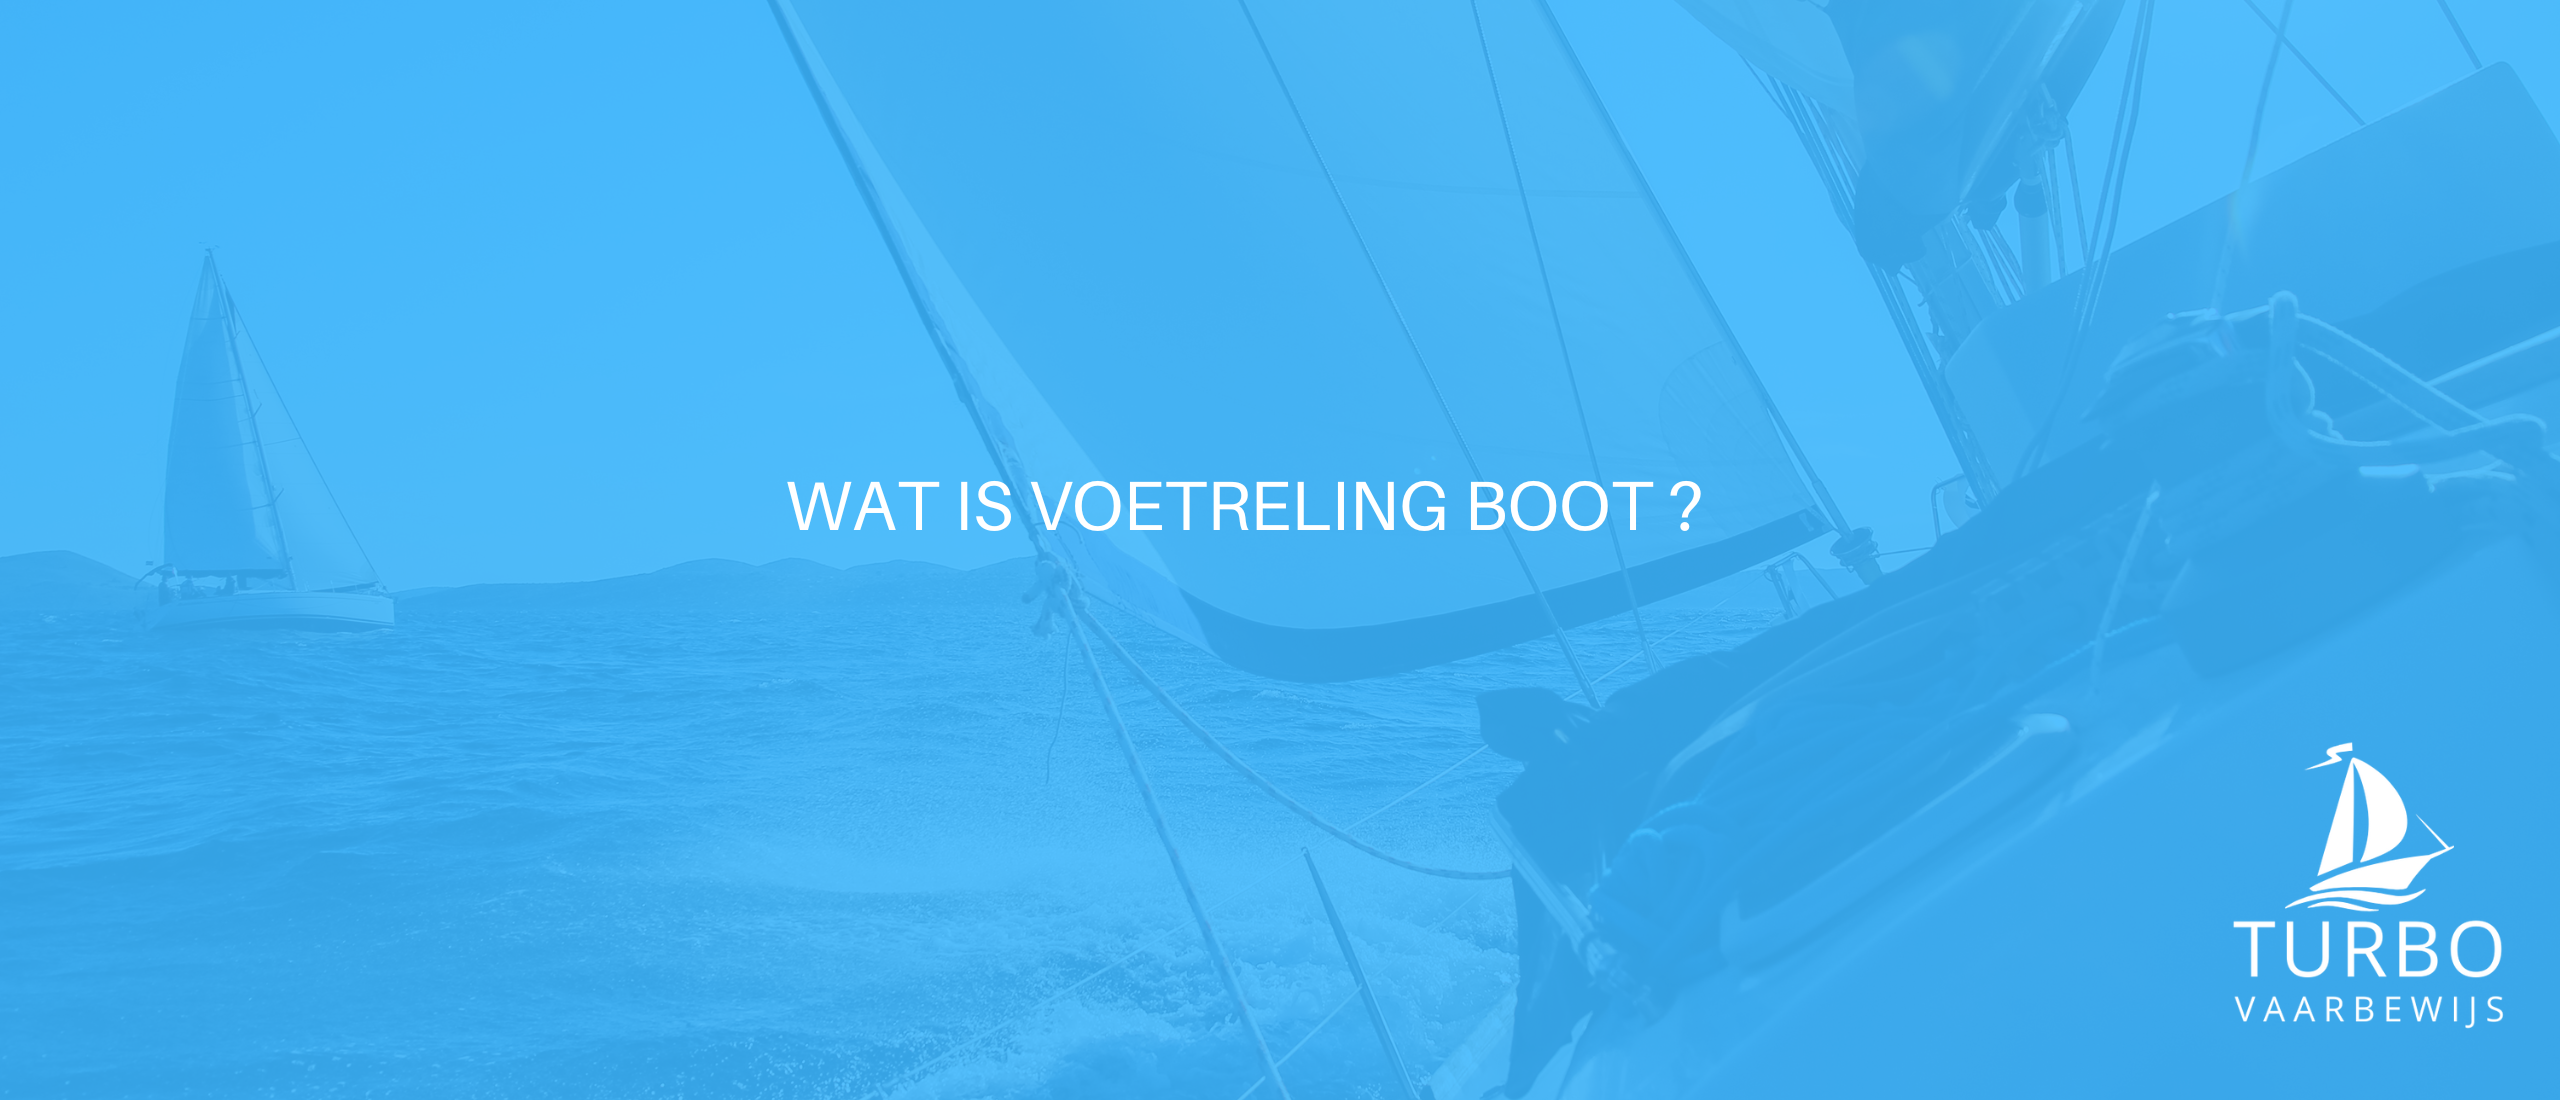 Wat is voetreling boot?